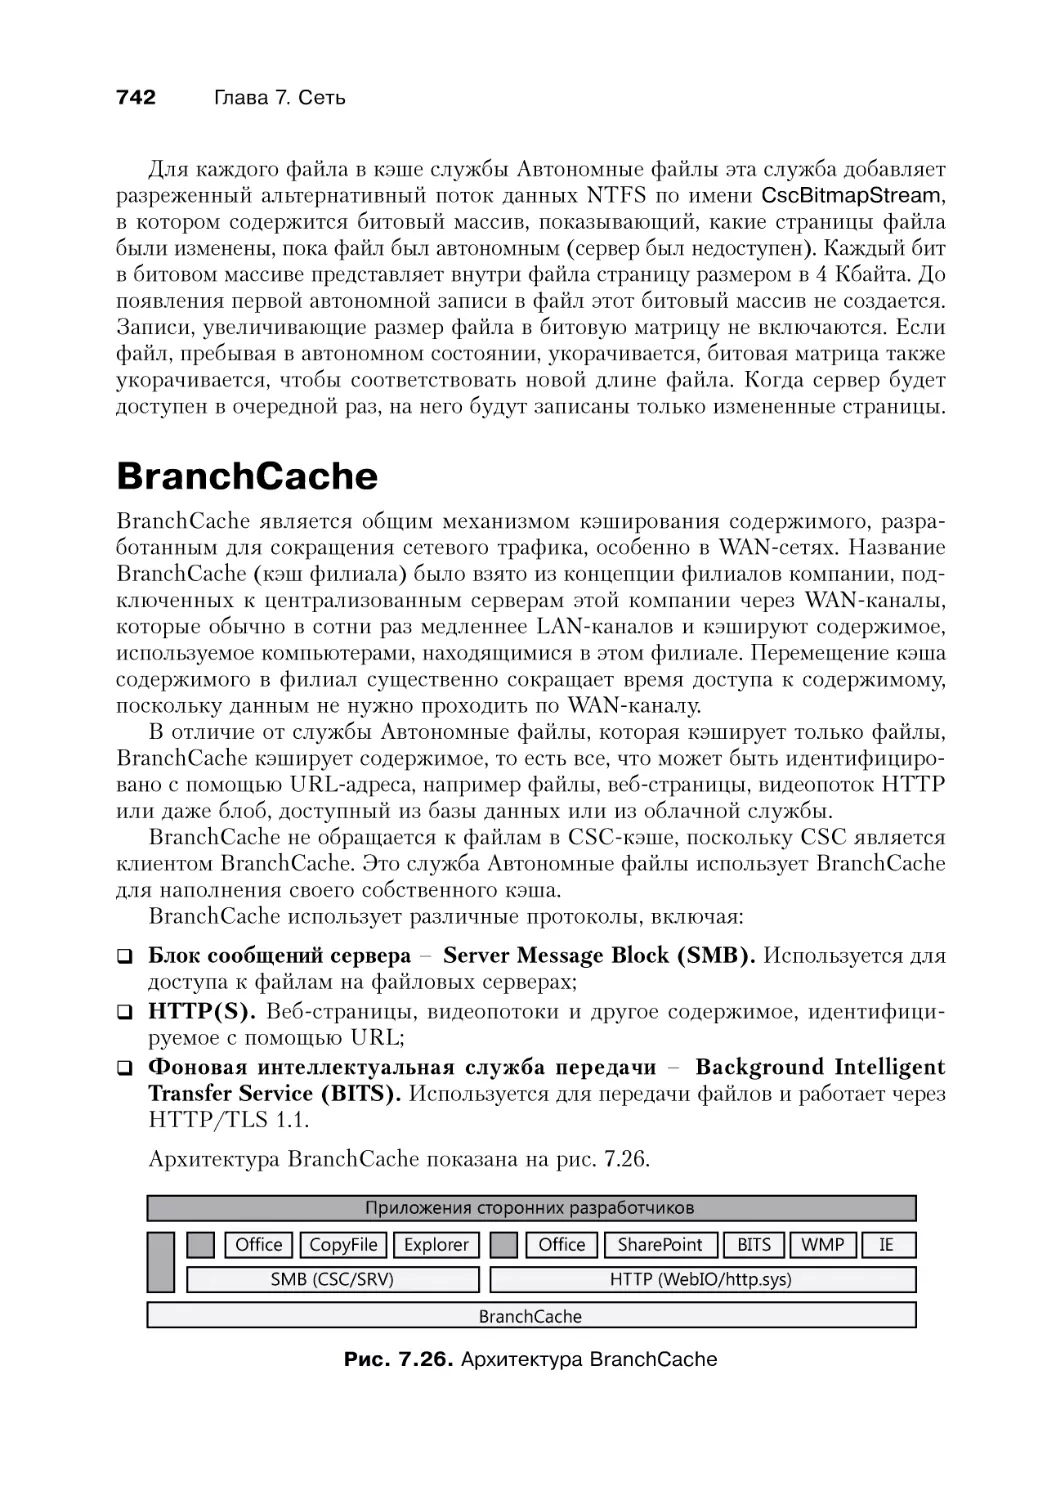 BranchCache